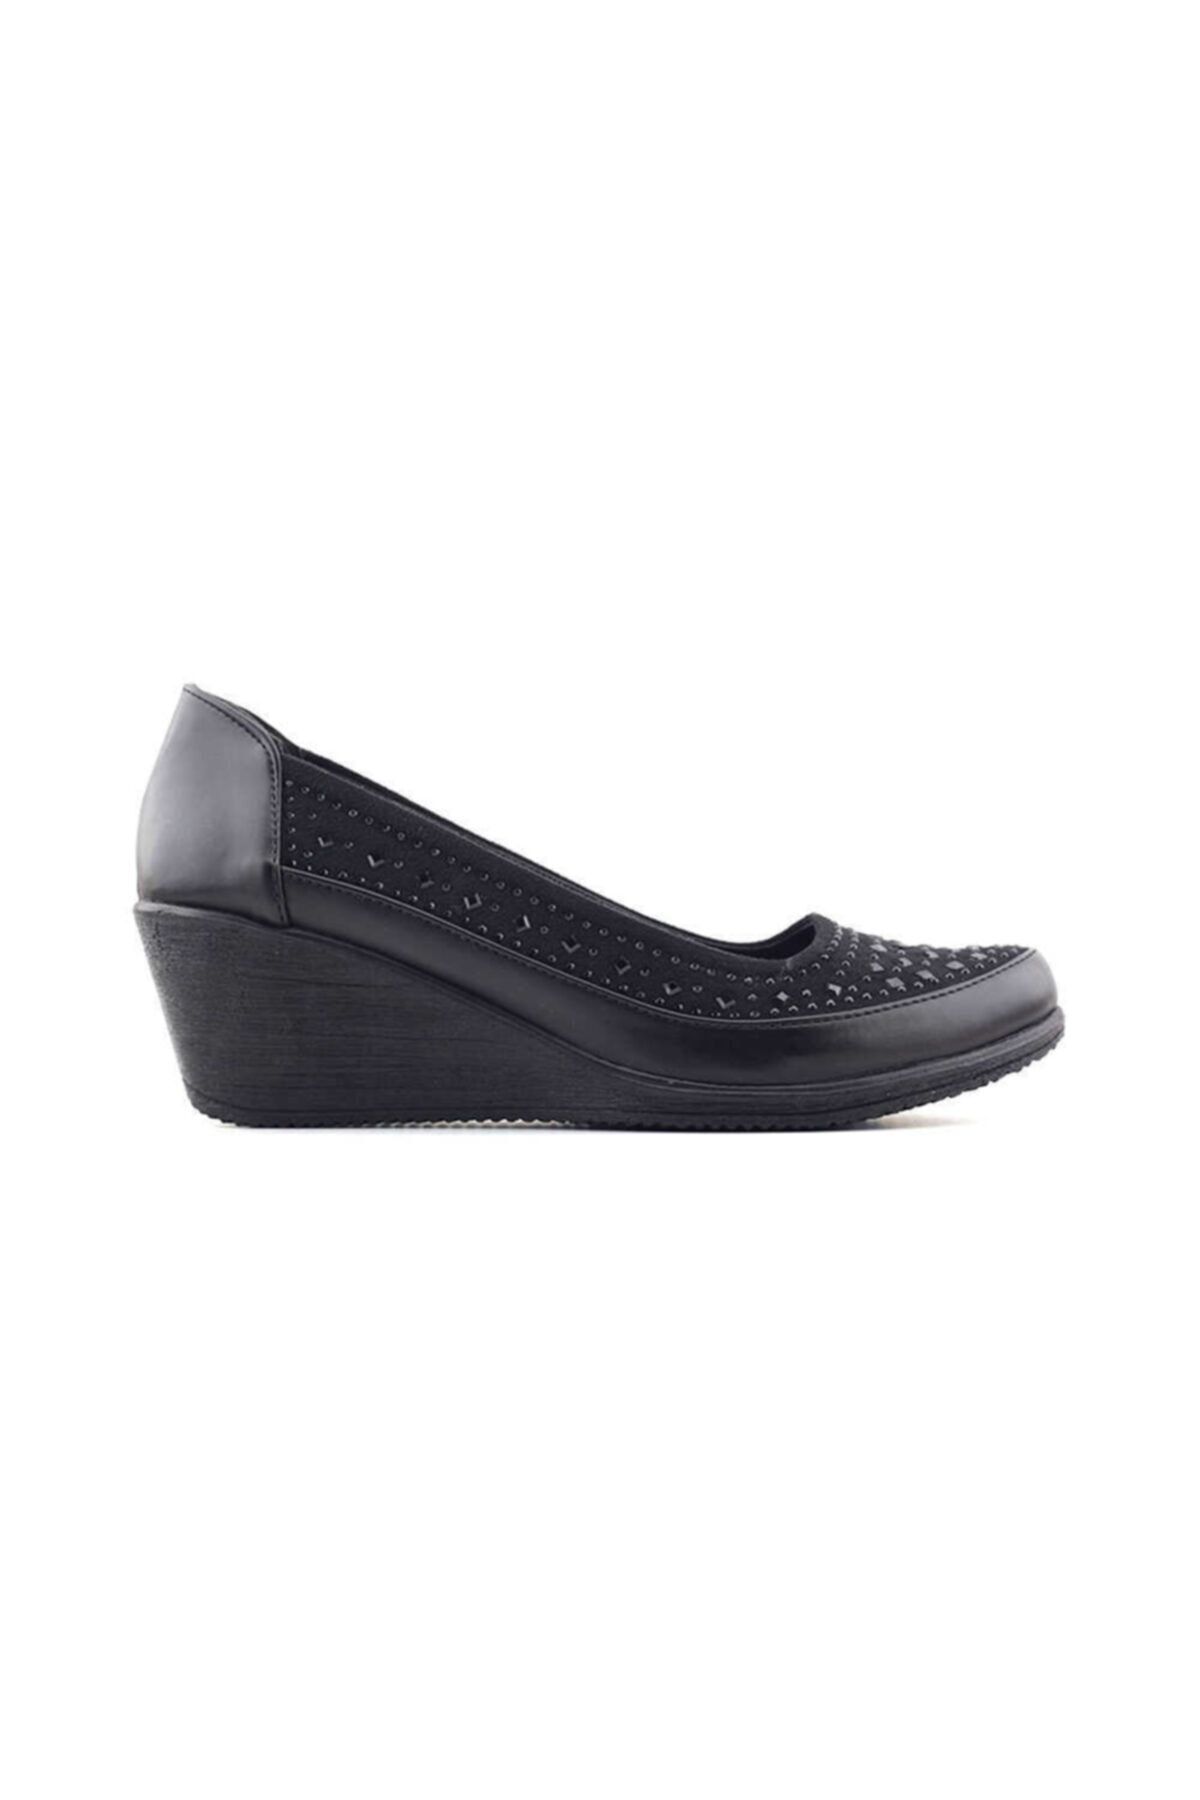 PUNTO 386041 Kadın Günlük Ayakkabı-siyah Taşlı